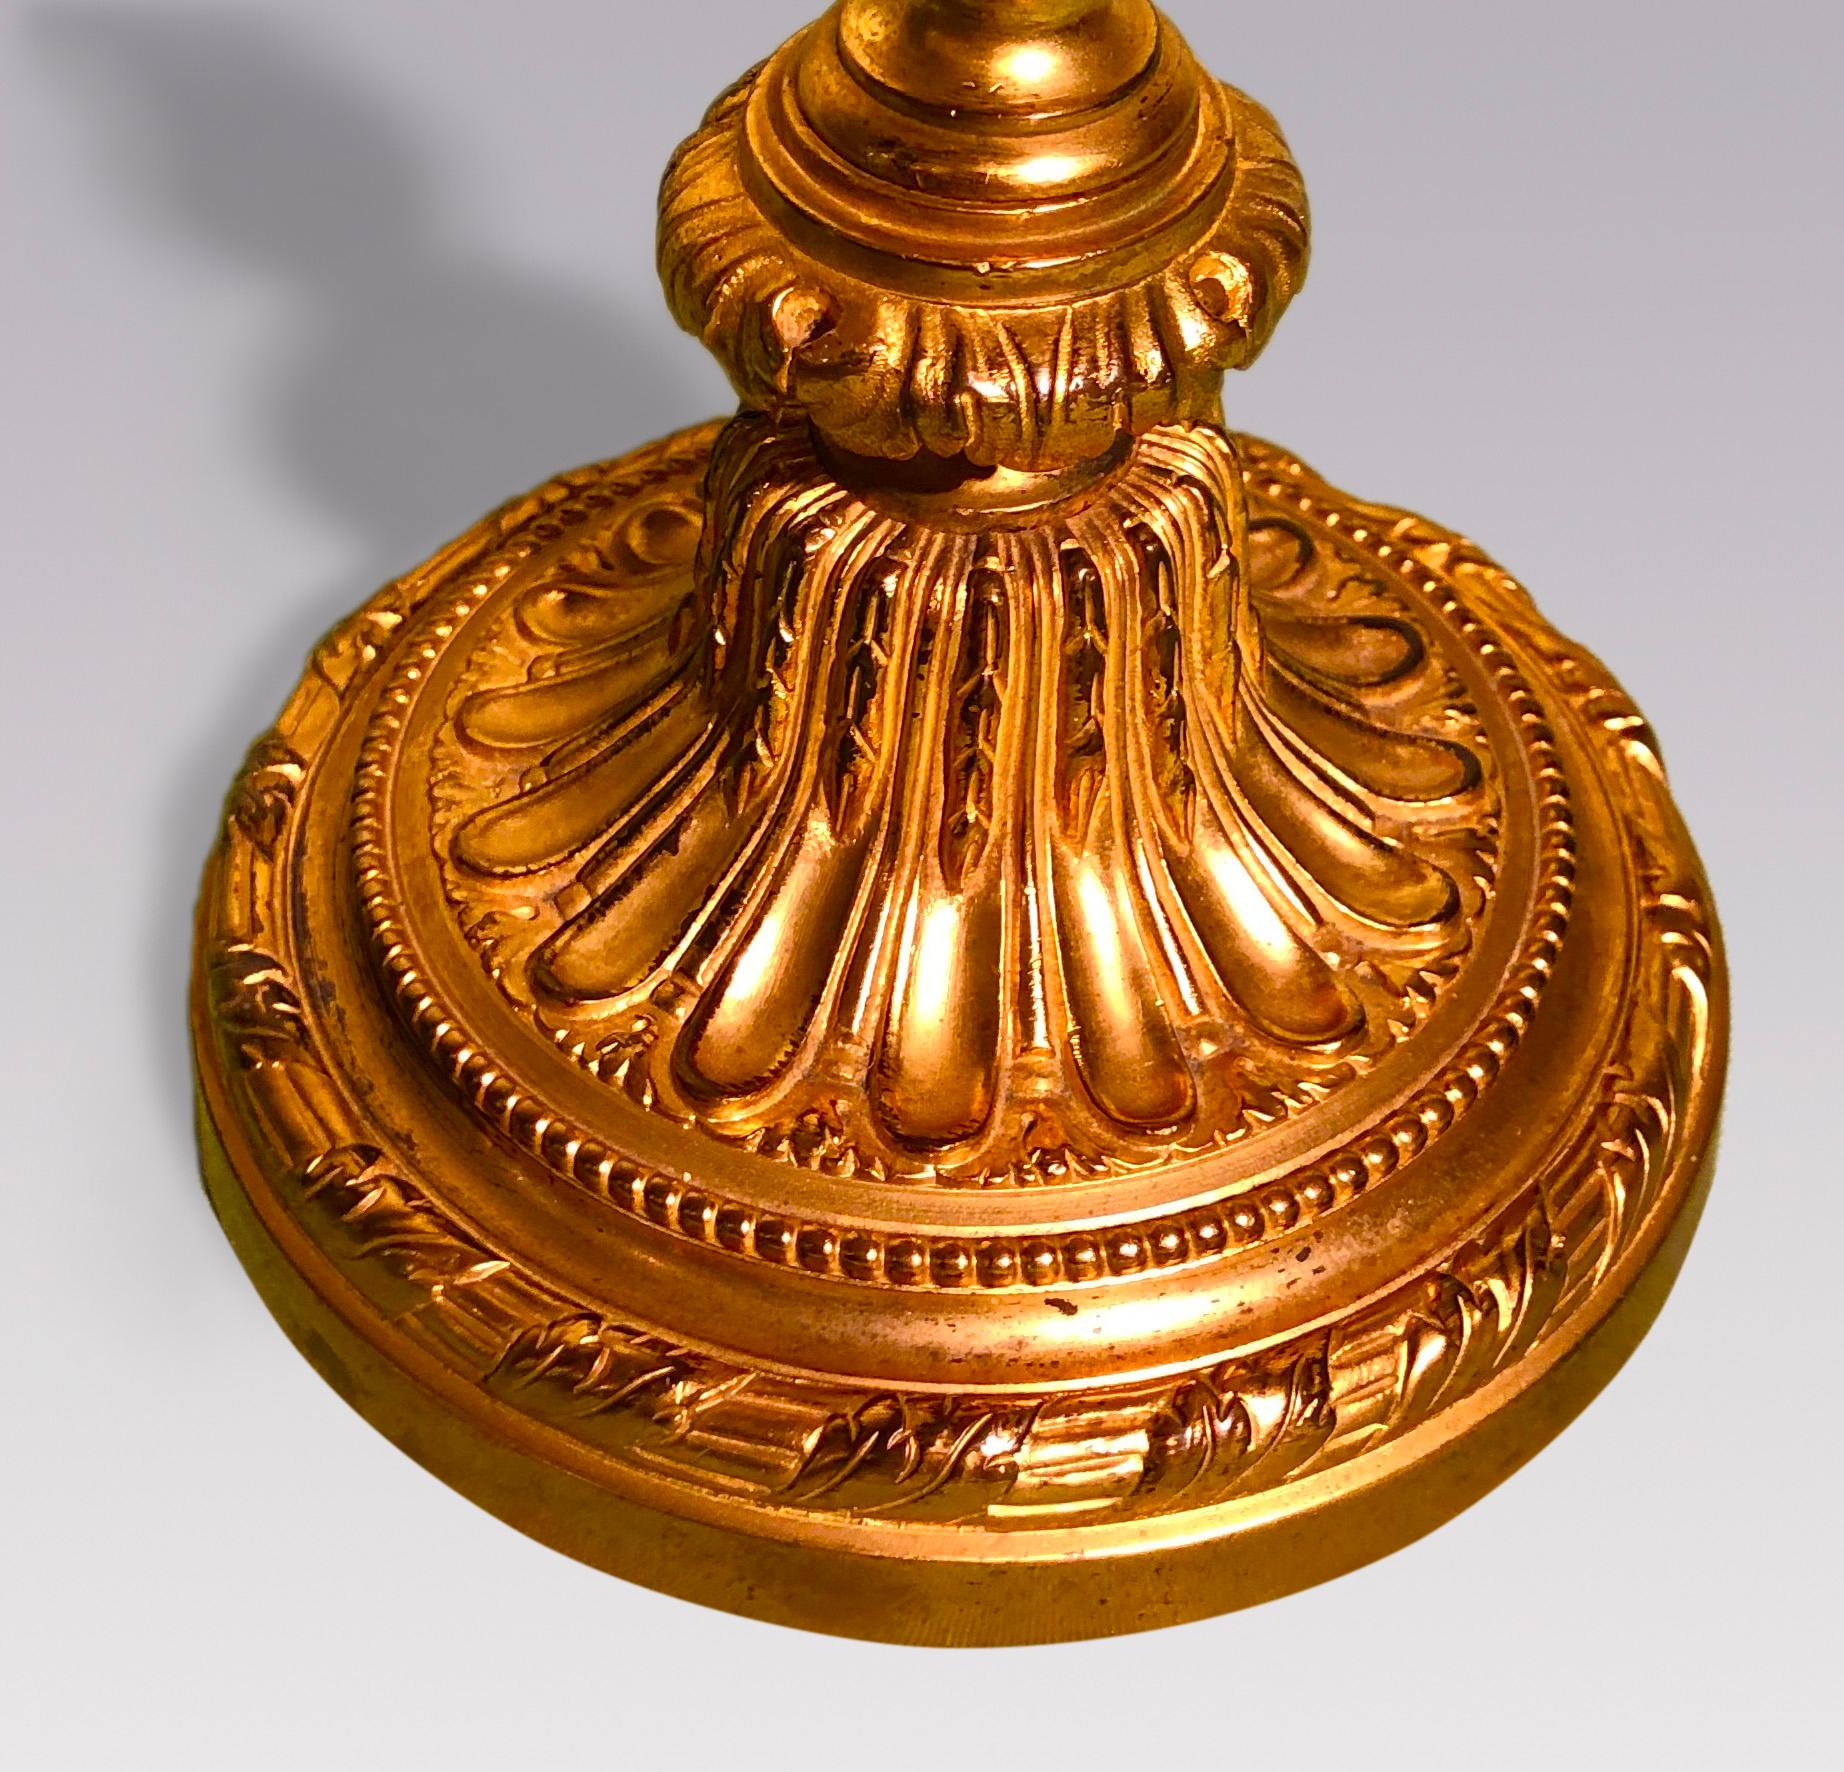 Une paire de candélabres français de style Louis XVI en bronze doré à trois lumières avec une décoration perlée sur toute la surface, avec des tiges cannelées décorées de guirlandes se terminant sur des bases circulaires cannelées.